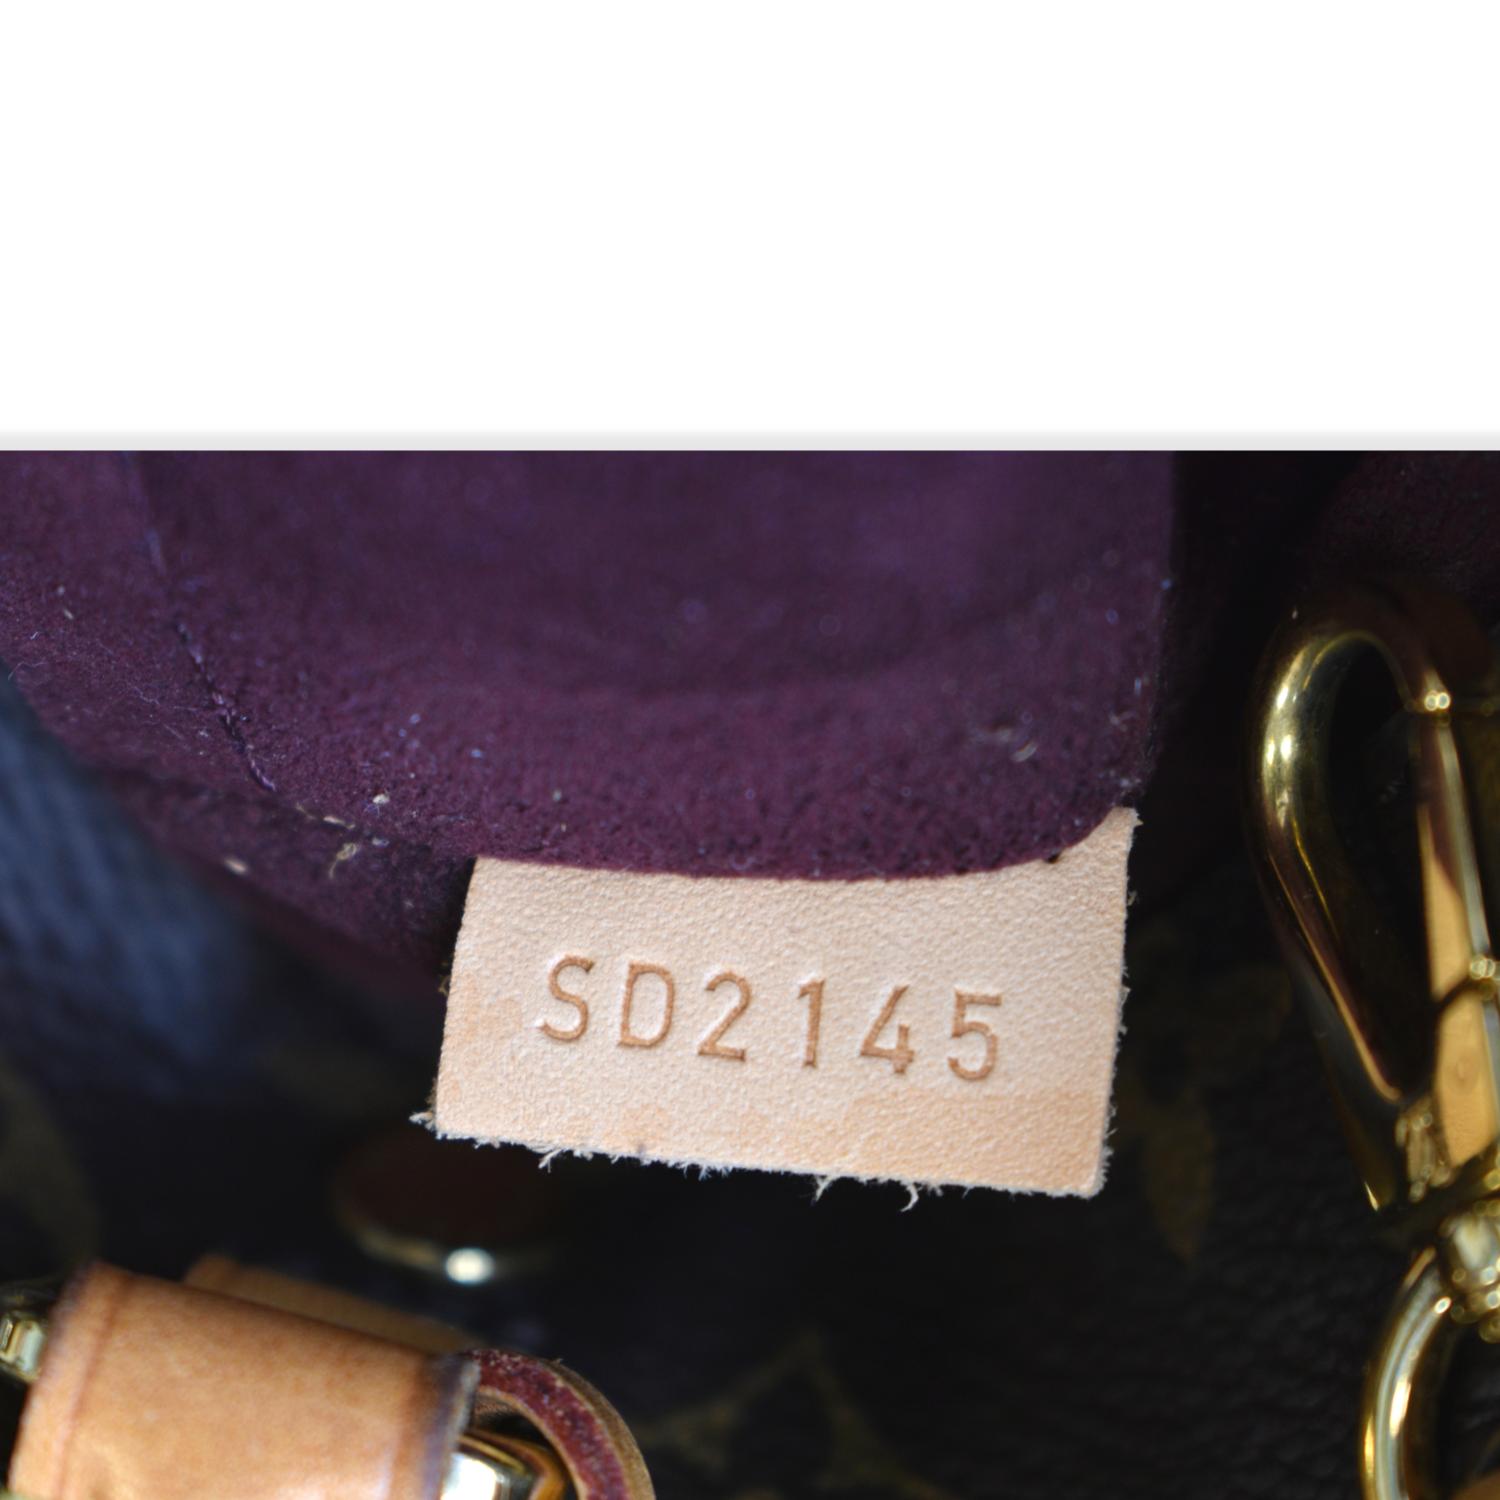 Louis Vuitton Monogram Montaigne BB - ShopStyle Satchels & Top Handle Bags